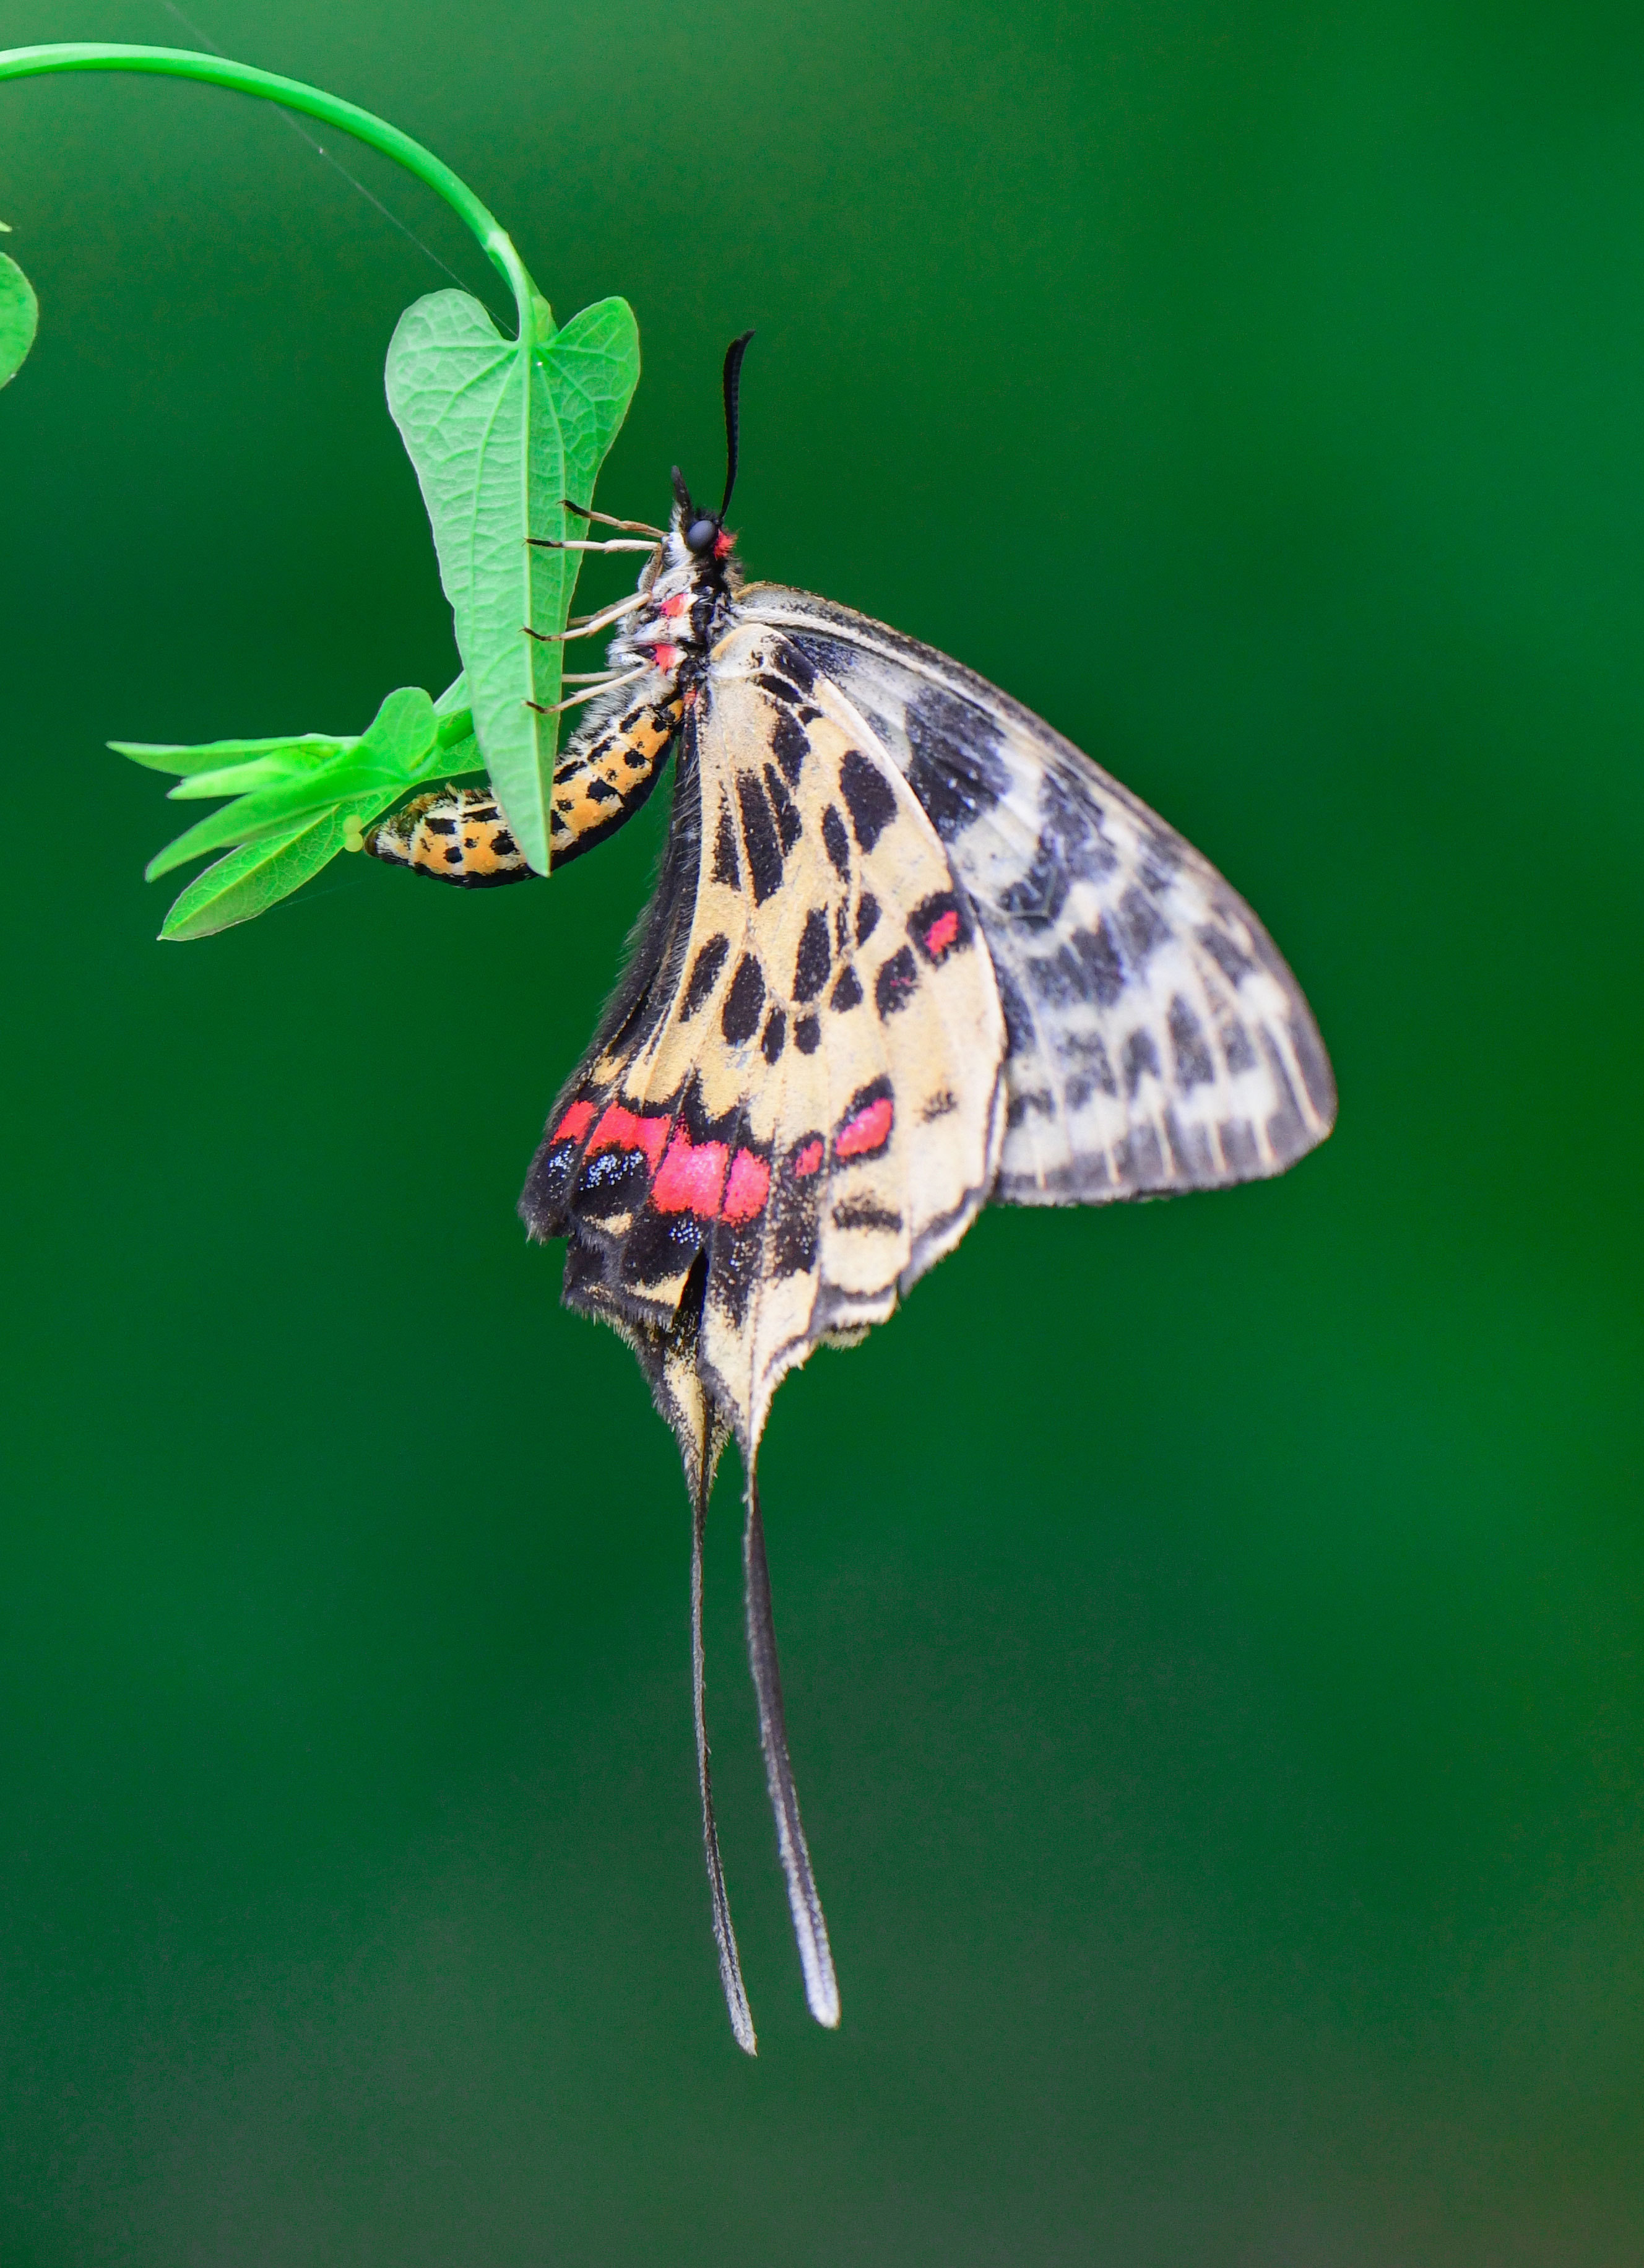 丝带凤蝶是我国非常珍贵的蝶种,在国内曾被列为14种珍贵蝴蝶种类之一